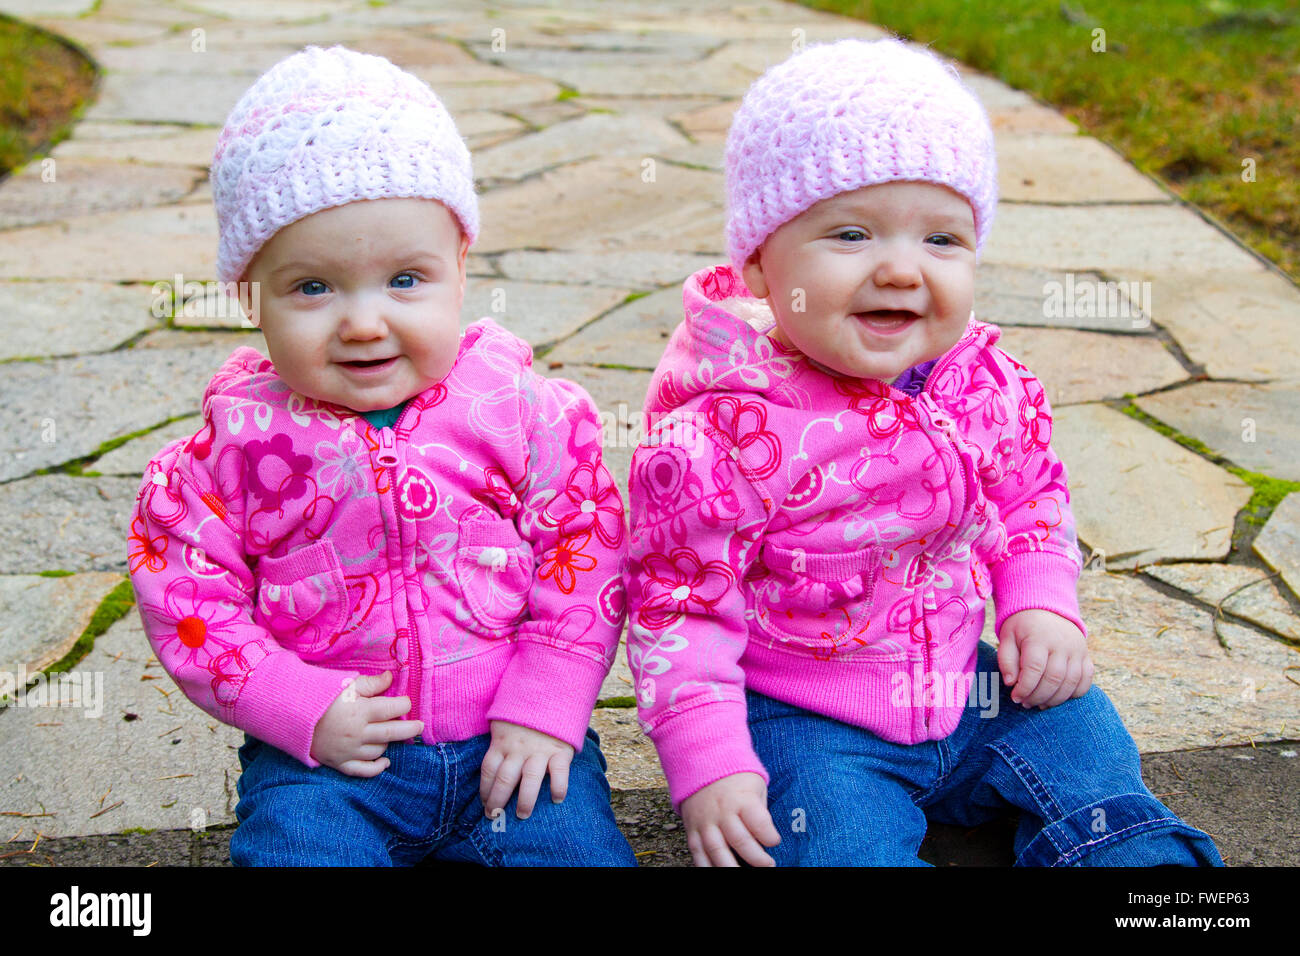 Lits bébé filles s'asseoir sur une pierre ronde portant des sweat-shirts et shorts rose. Banque D'Images